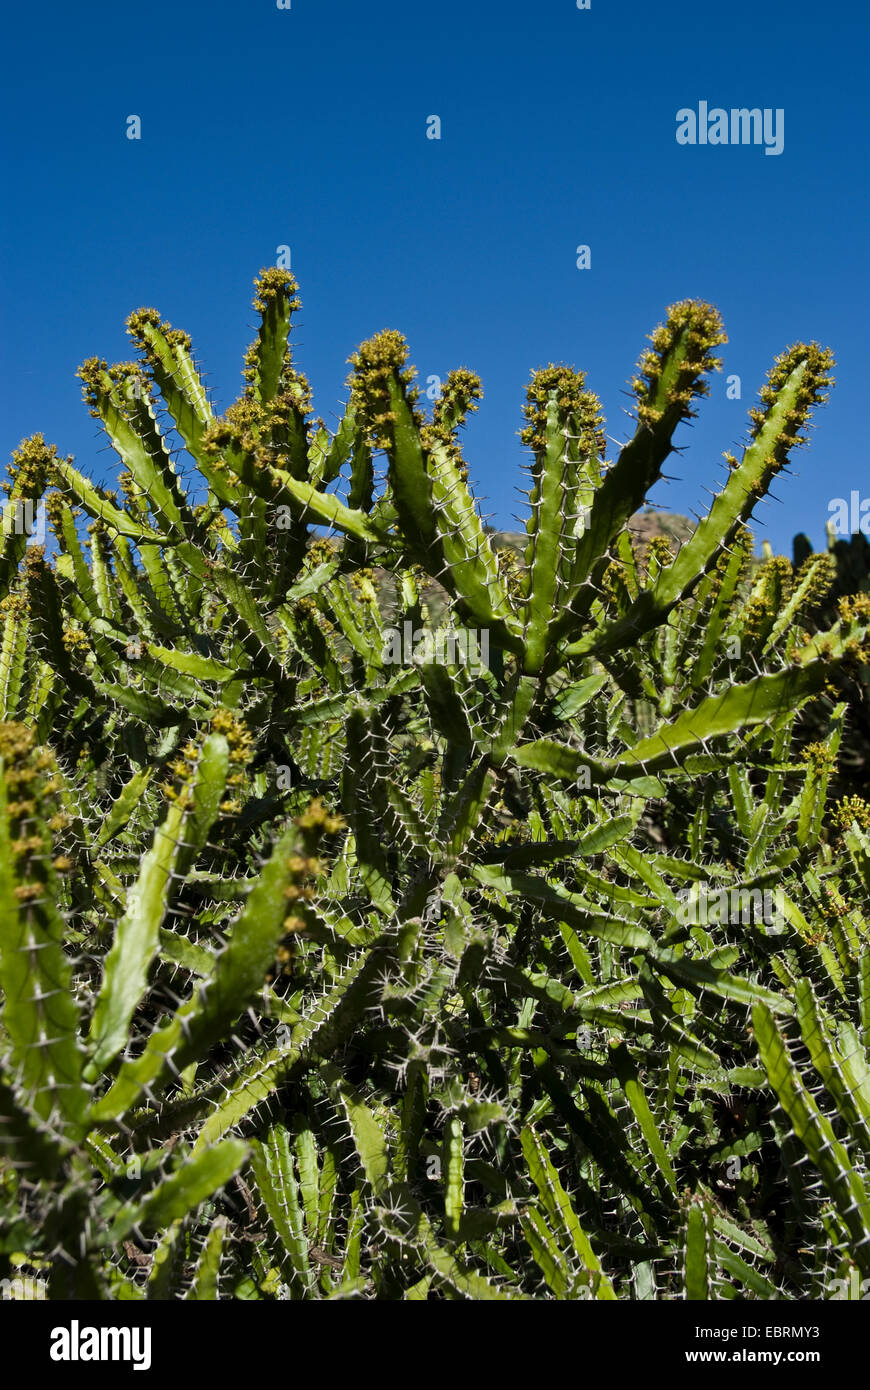 Expurgo (Euphorbia deightonii), floreciendo, Islas Canarias, Gran Canaria Foto de stock